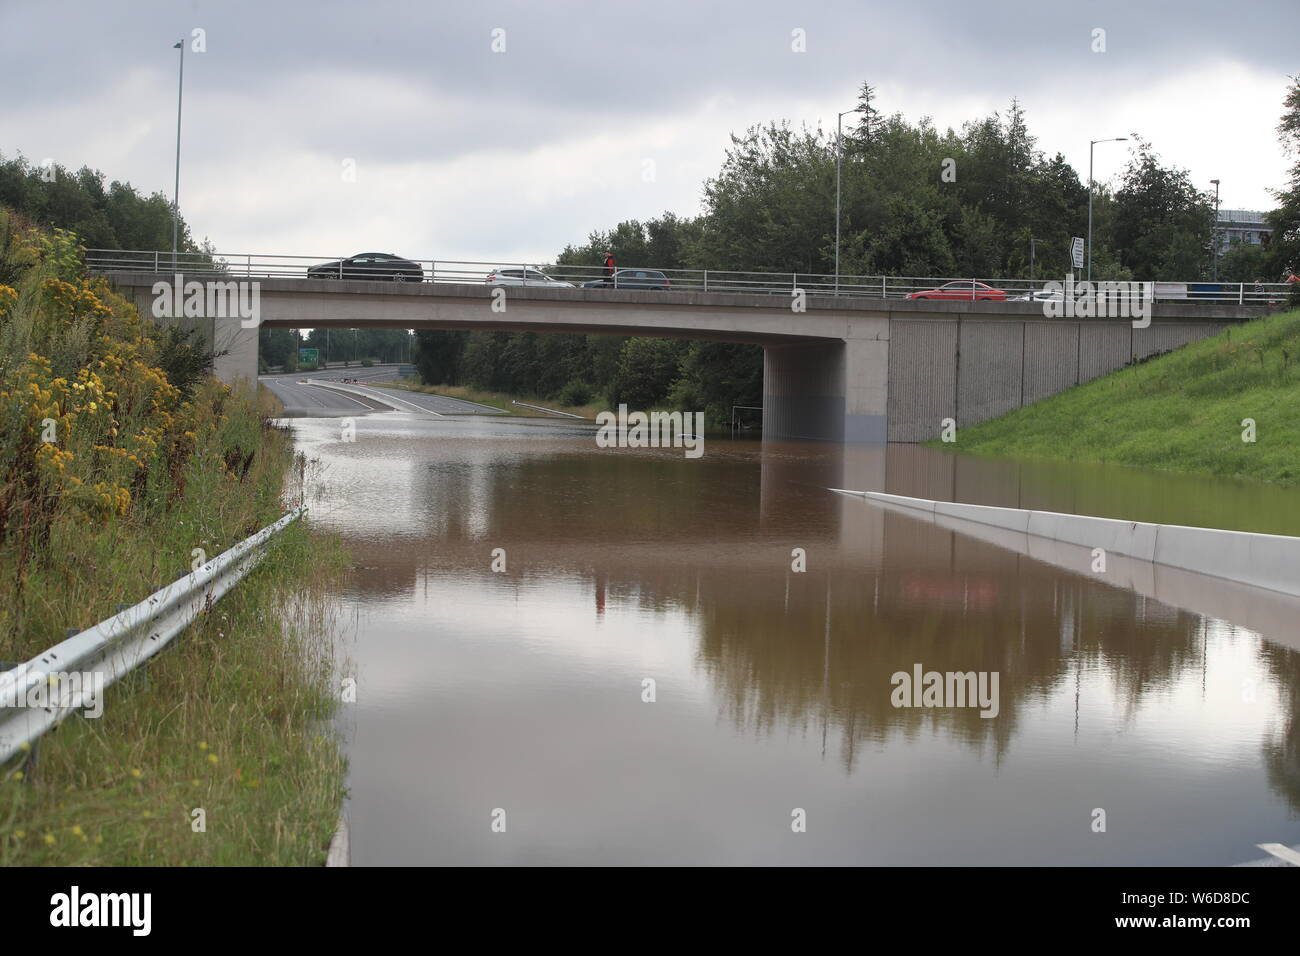 Las inundaciones en la A555 cerca de Handforth, Cheshire, donde un importante incidente fue declarado tarde el miércoles después de fuertes lluvias causaron graves inundaciones. Foto de stock